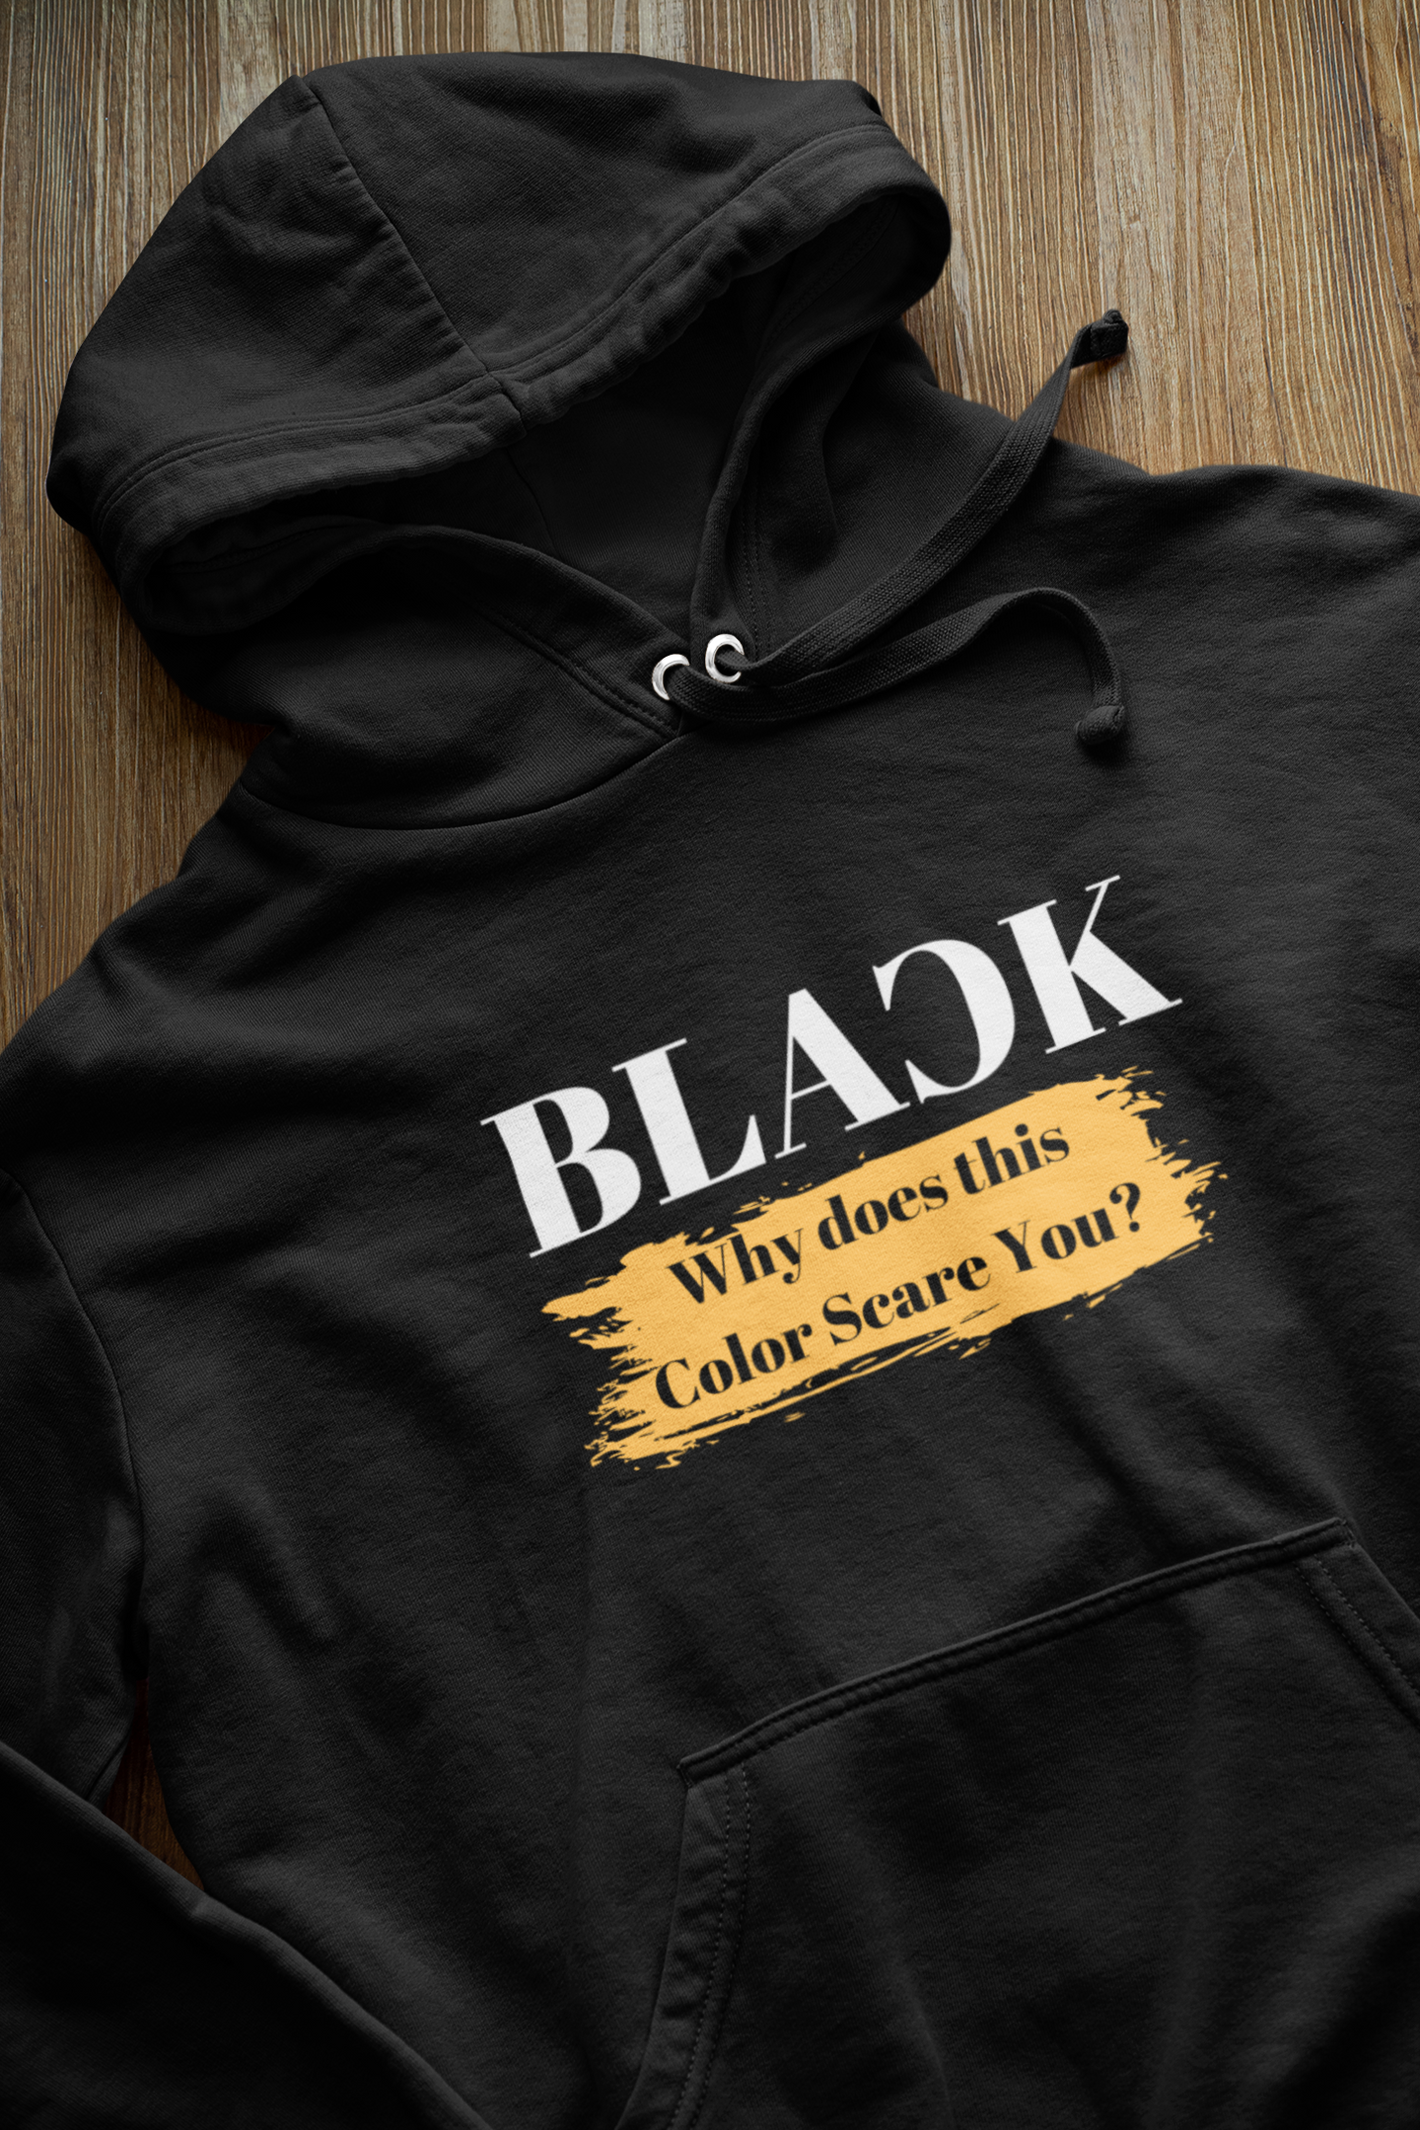 What is Black Pain, black hoodie, cute saying, best color. Best hoodie style. Best black hoodie.